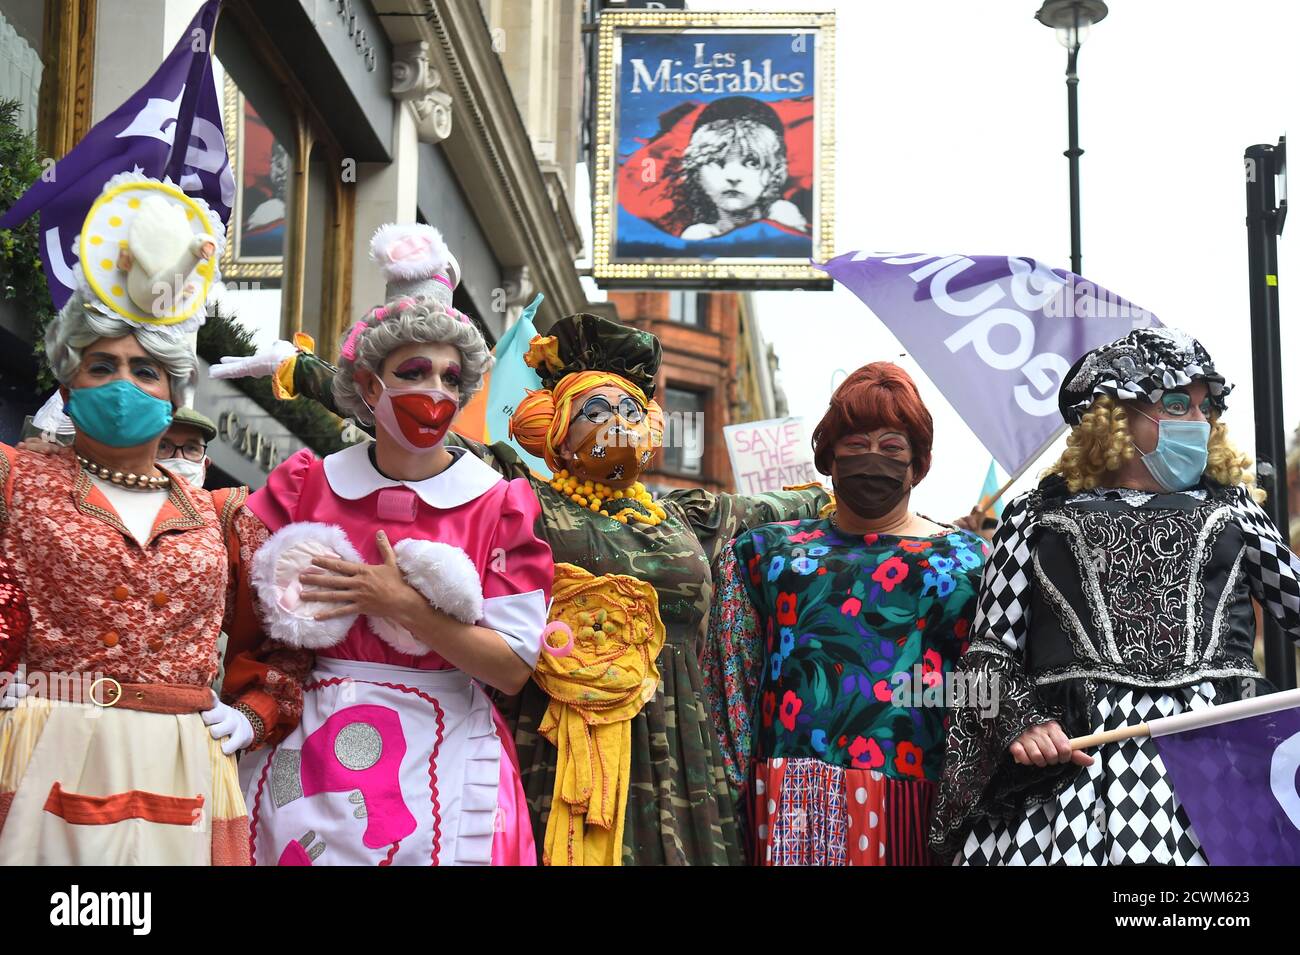 Pantomime-Dames machen ihren Weg zum Parliament Square, um gemeinsam mit anderen kreativen Arbeitern eine Kundgebung zu veranstalten, um die Auswirkungen der Pandemie auf Pantomime und Live-Theater zu beleuchten. Stockfoto